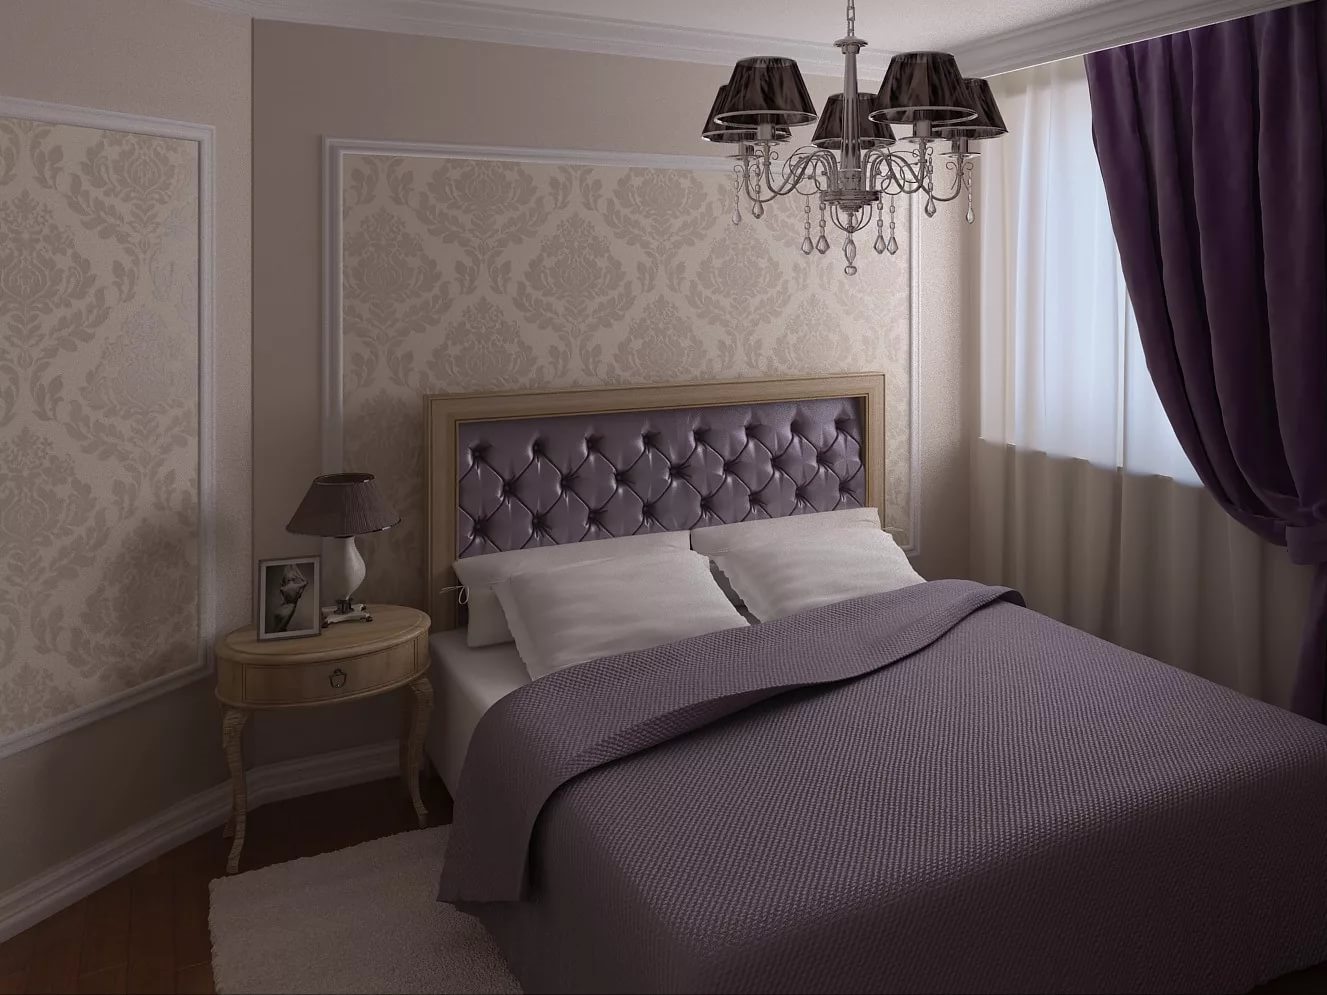 Thiết kế phòng ngủ với tông màu tím lạnh